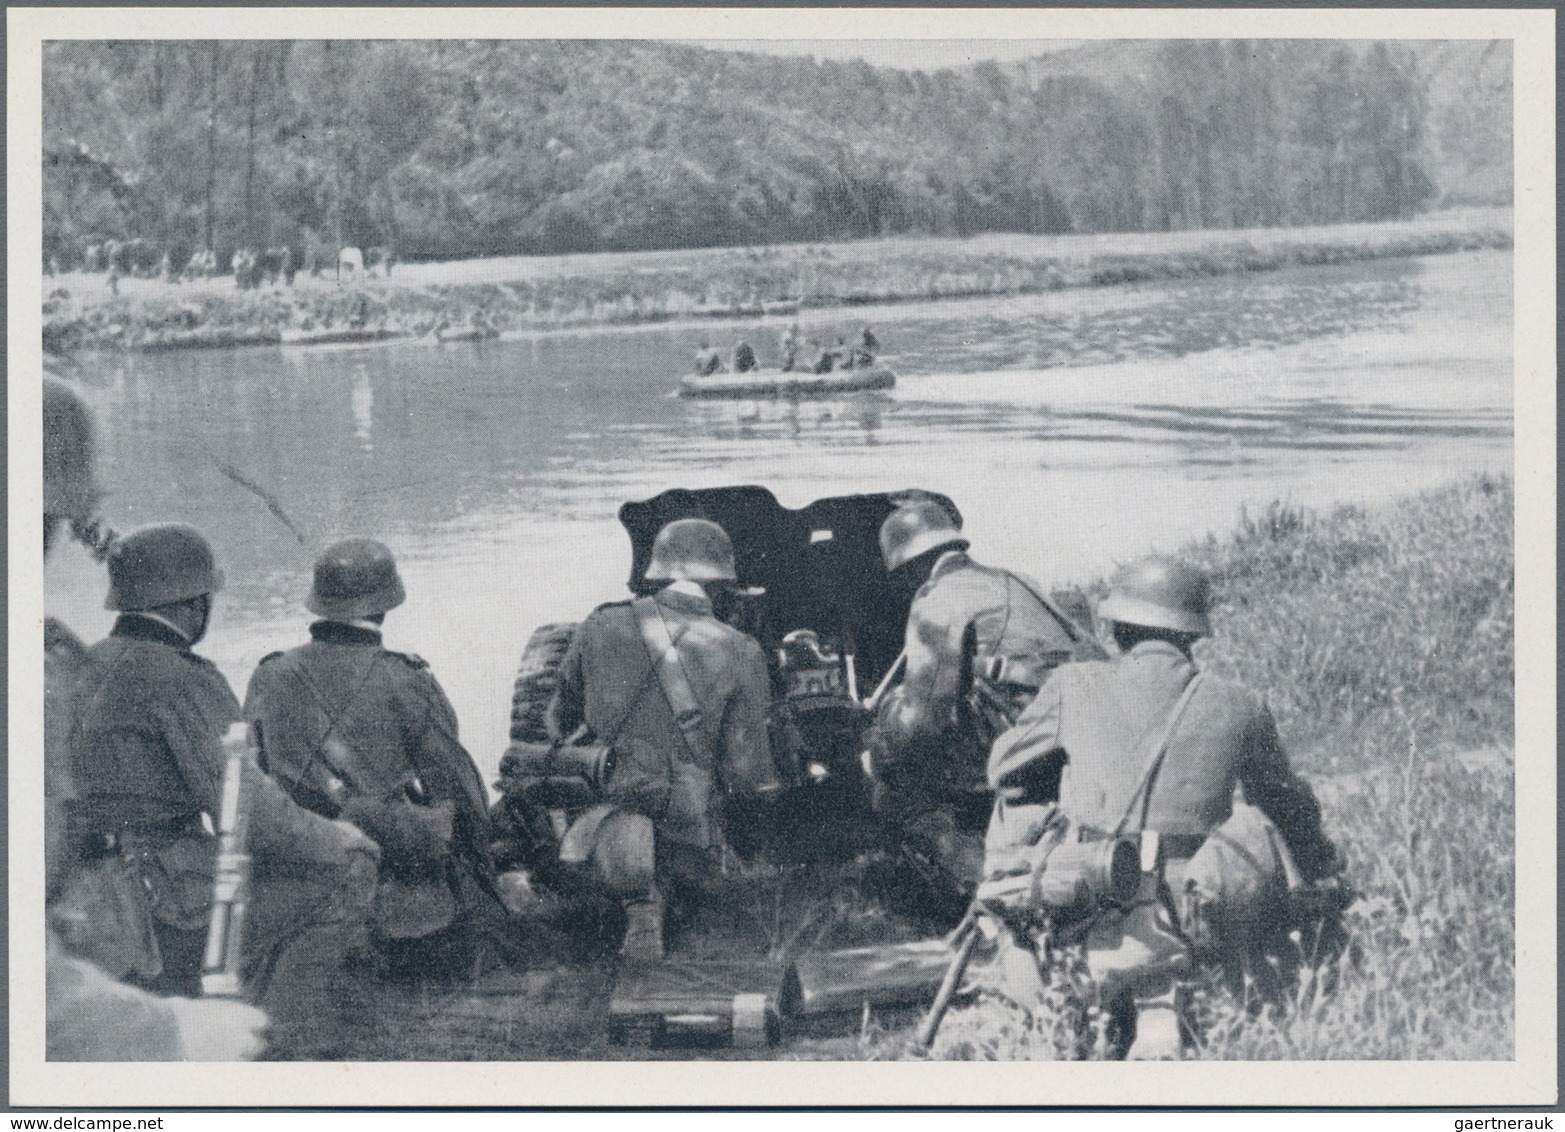 Ansichtskarten: Propaganda: 1942, DEUTSCHES HEER, zwei Werbeschreiben mit dem Bild von Ritterkreuztr